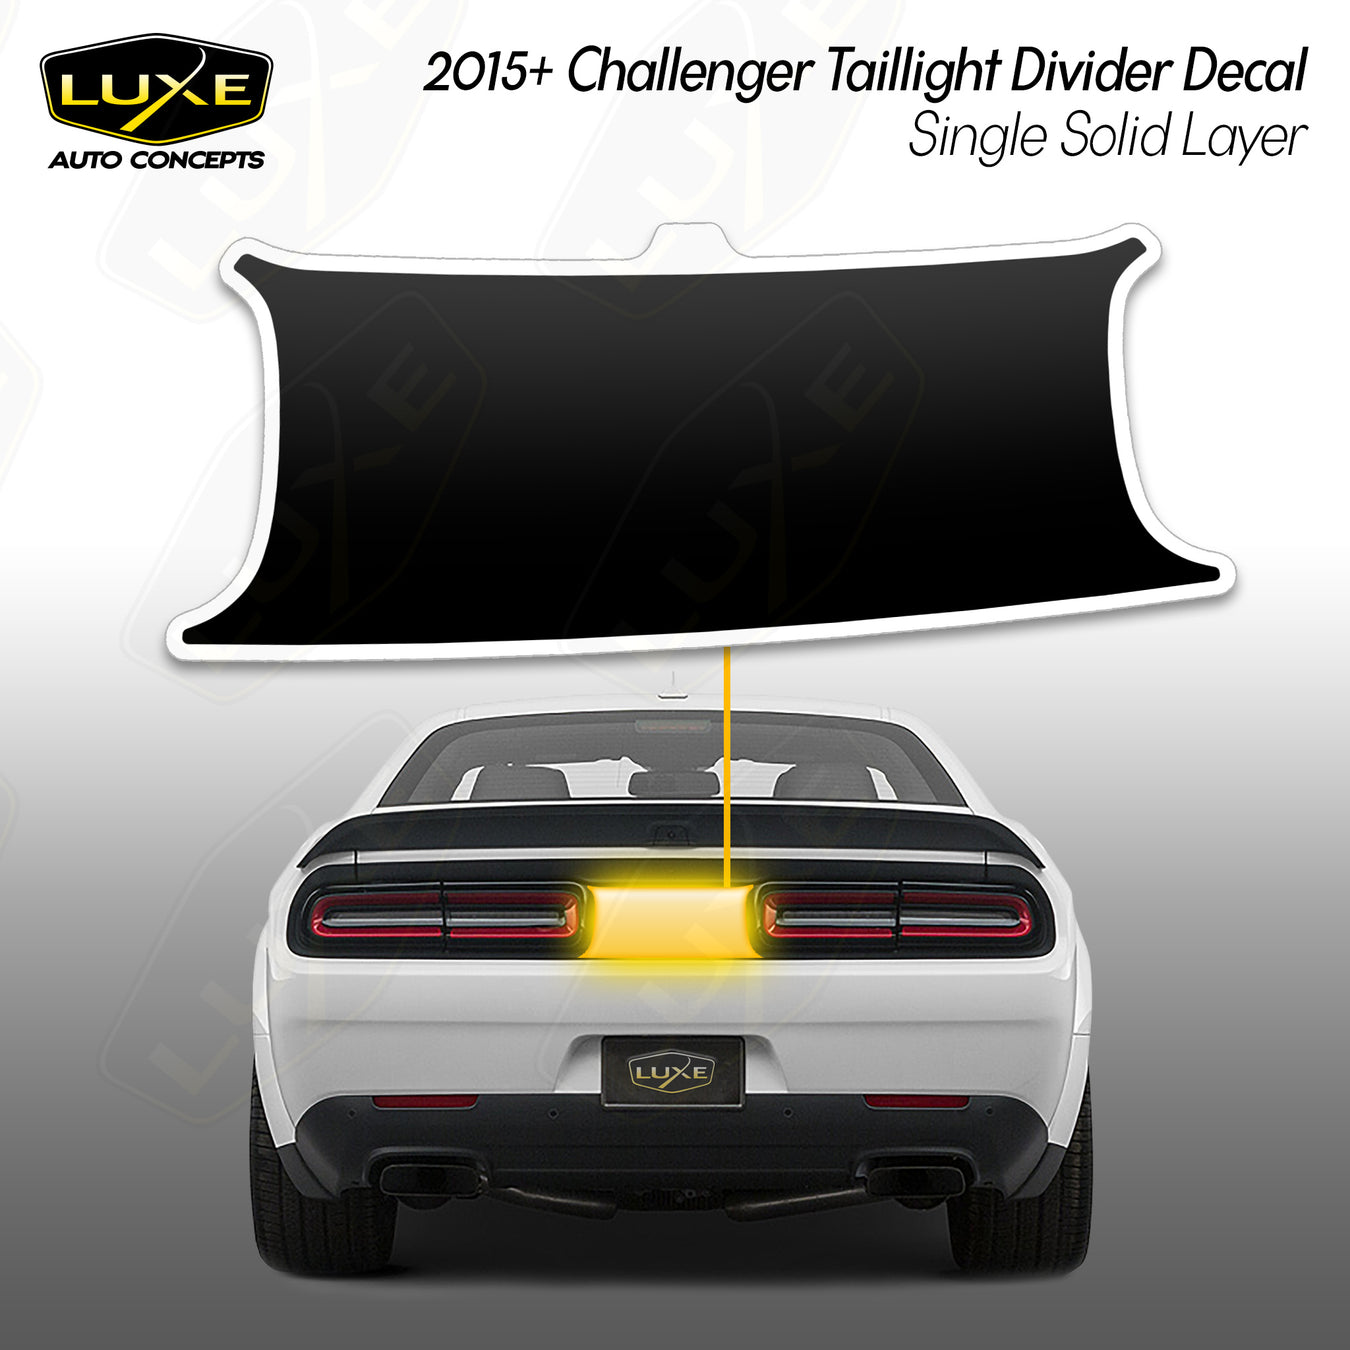 Challenger Taillight Divider Decals